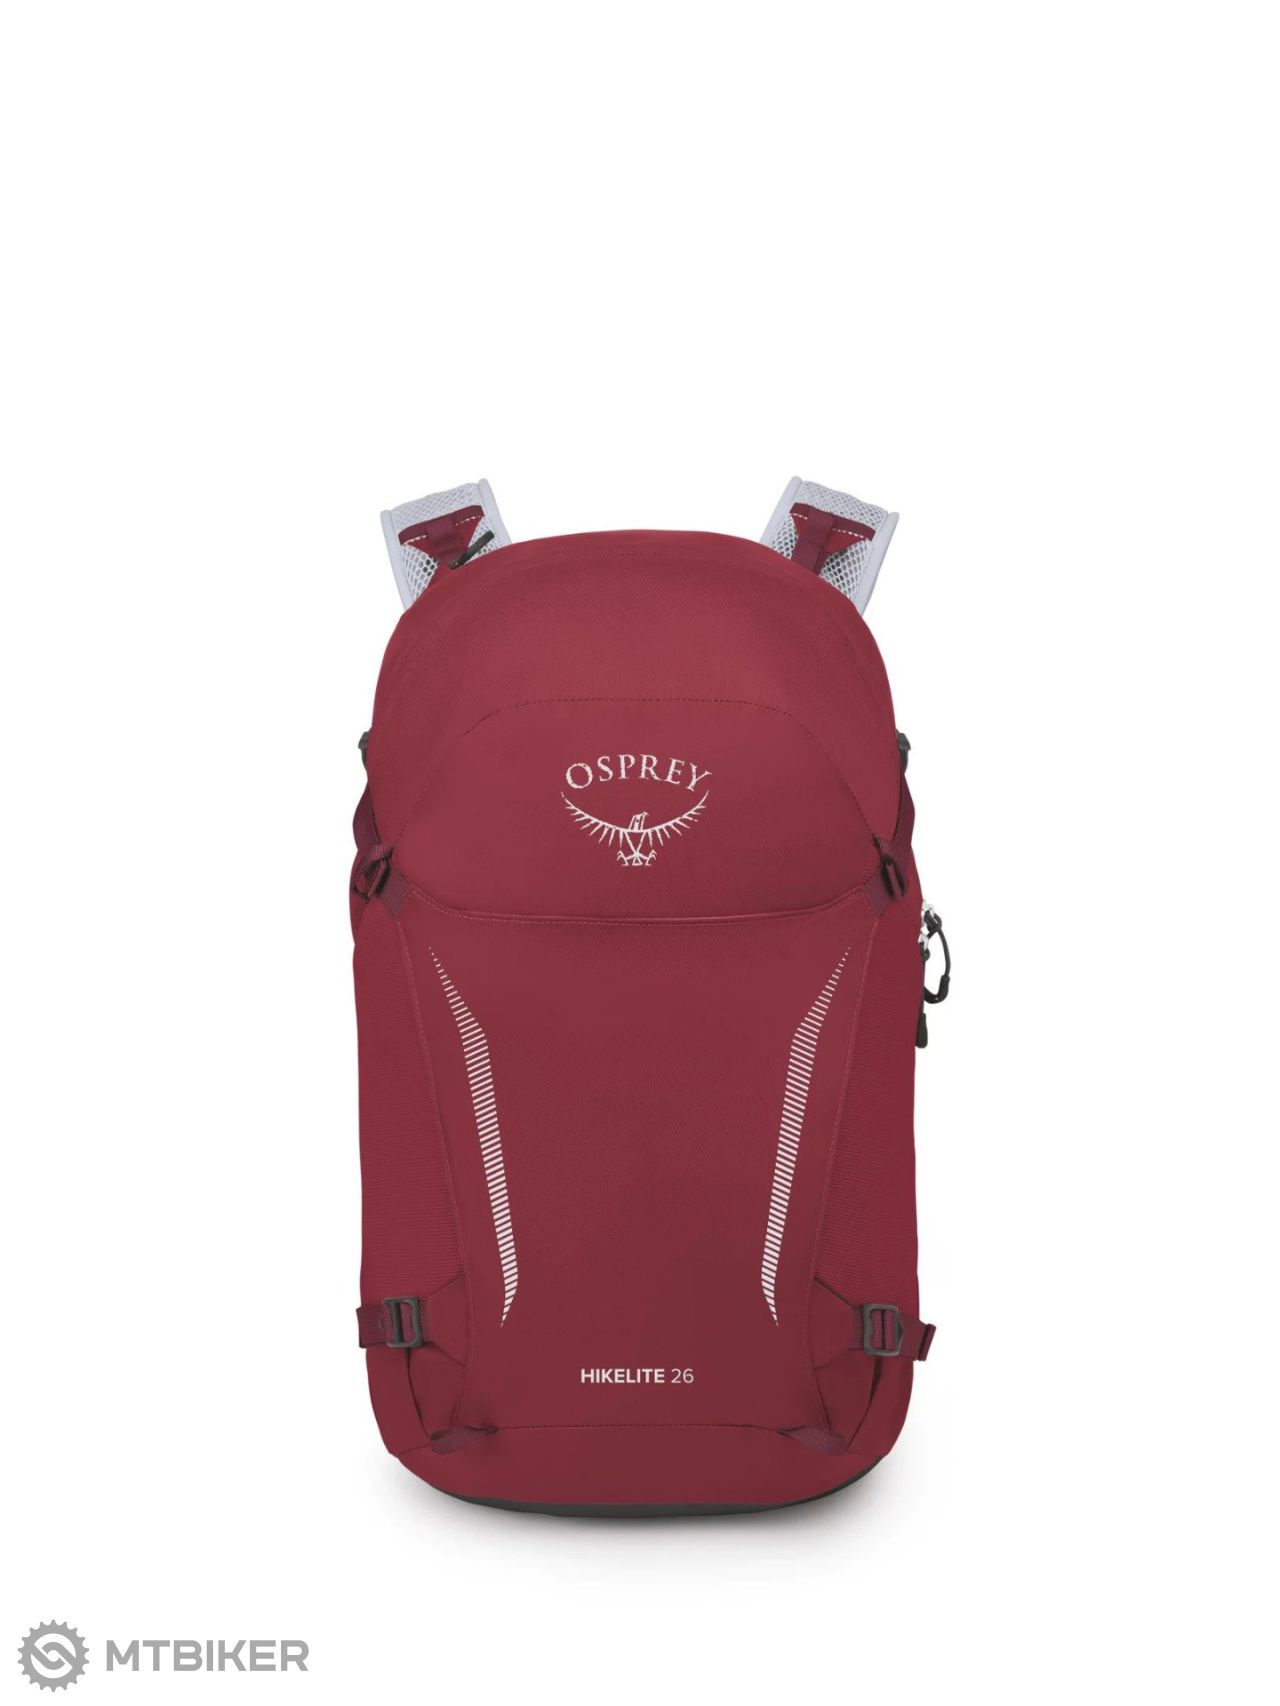 Osprey Hikelite backpack, l, red - MTBIKER.shop